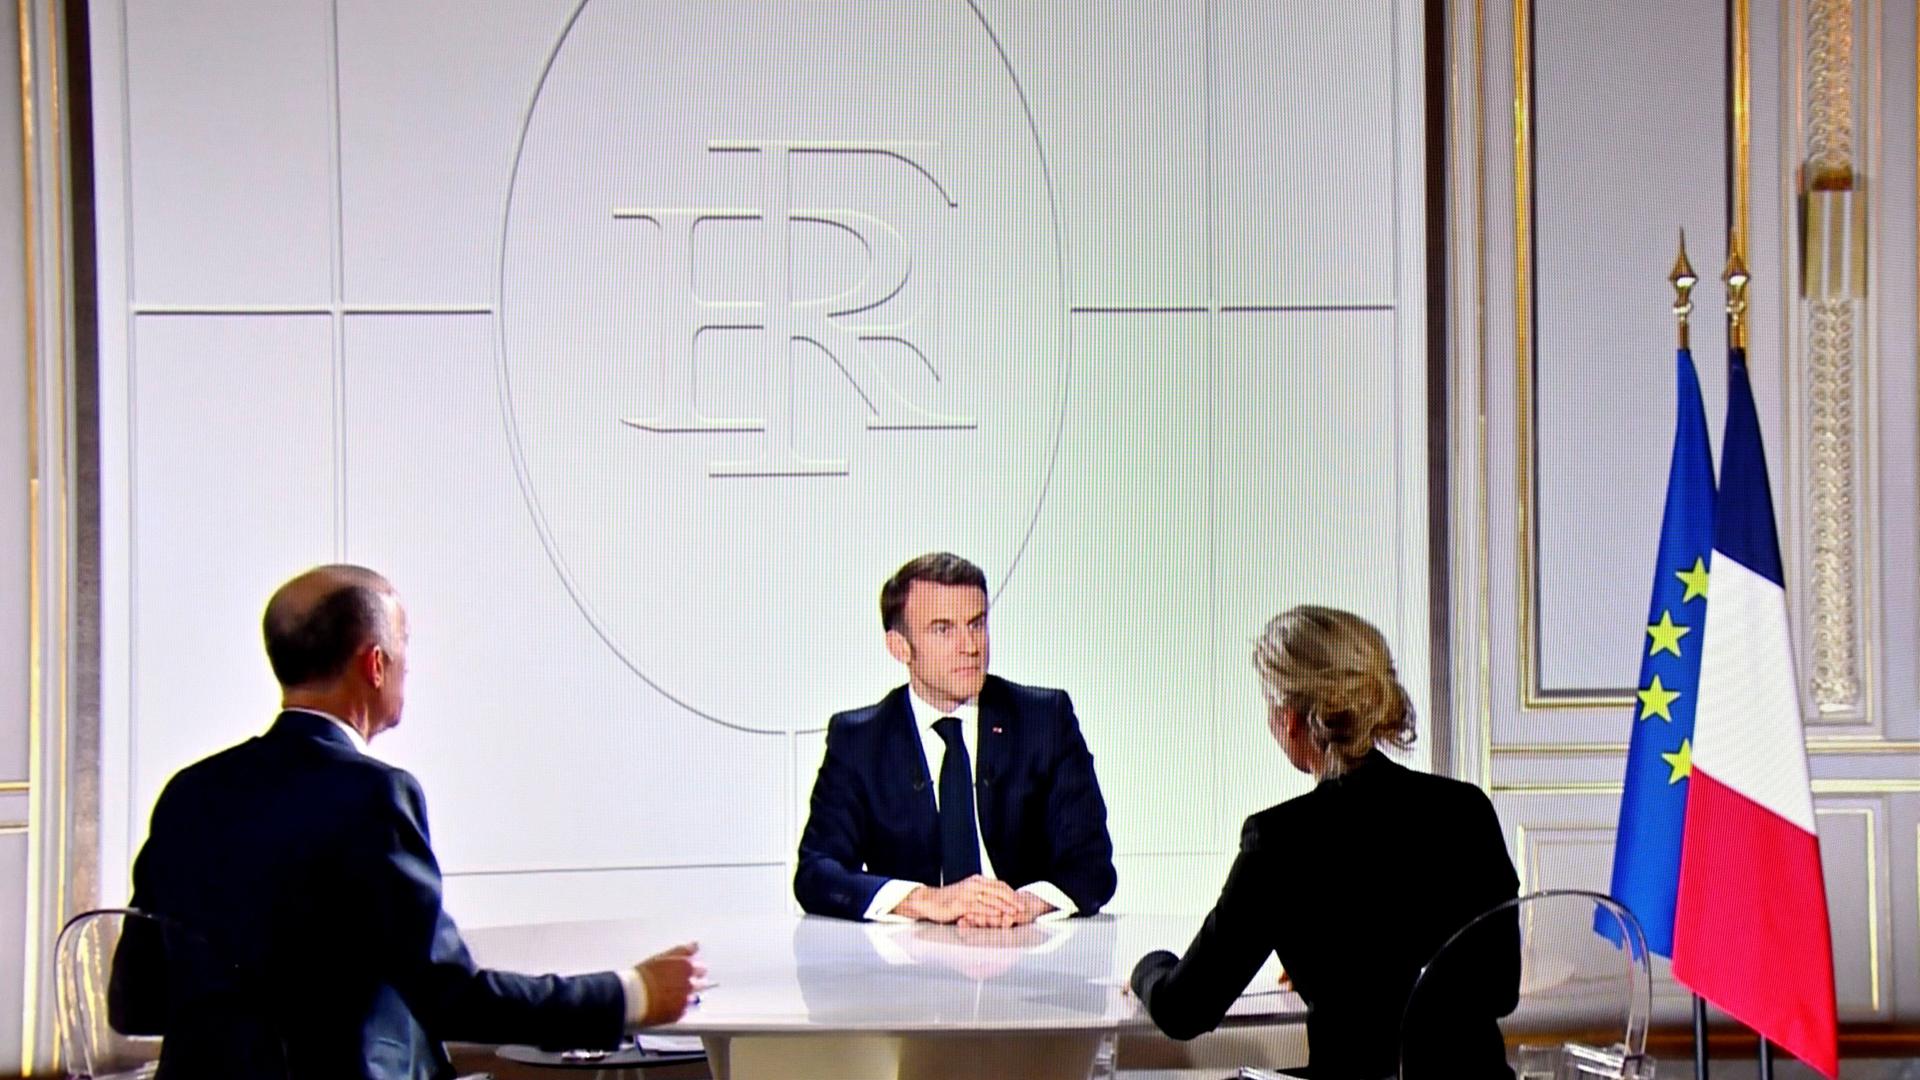 Der französische Präsident Macron in einem TV-Interview. Vor ihm sitzen zwei Journalisten.